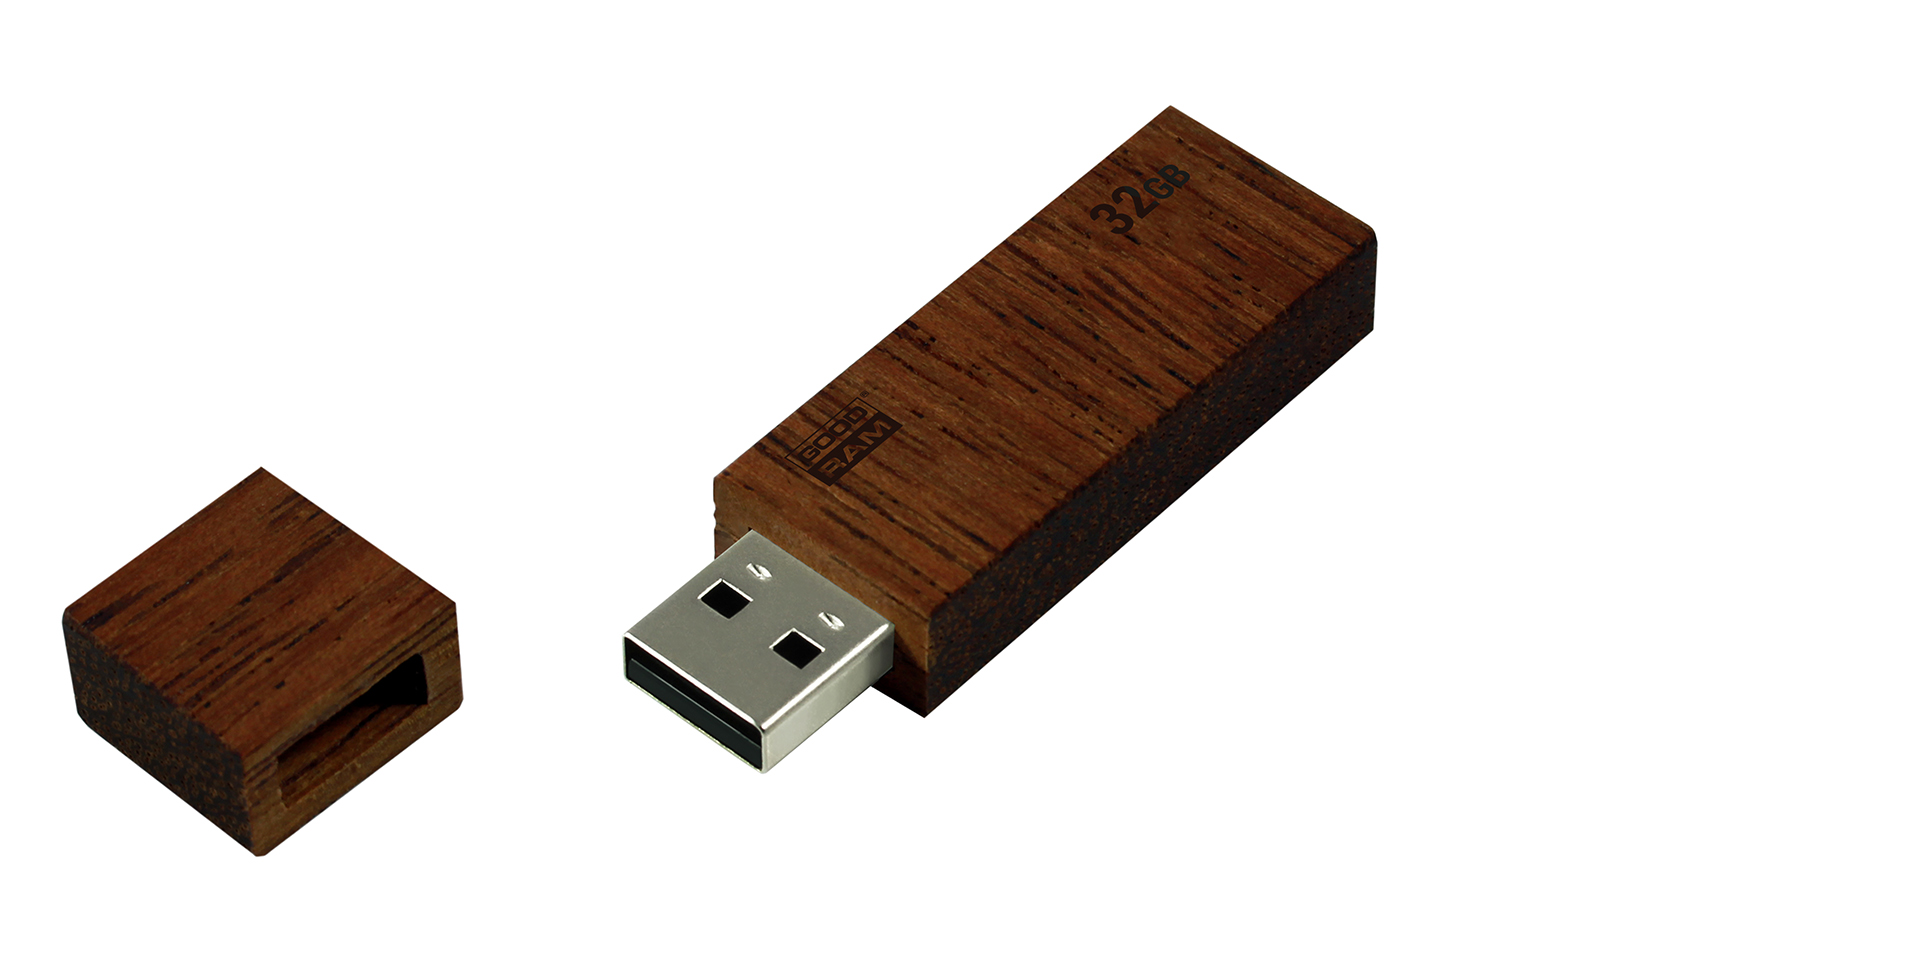 UEC2 wood flash drive